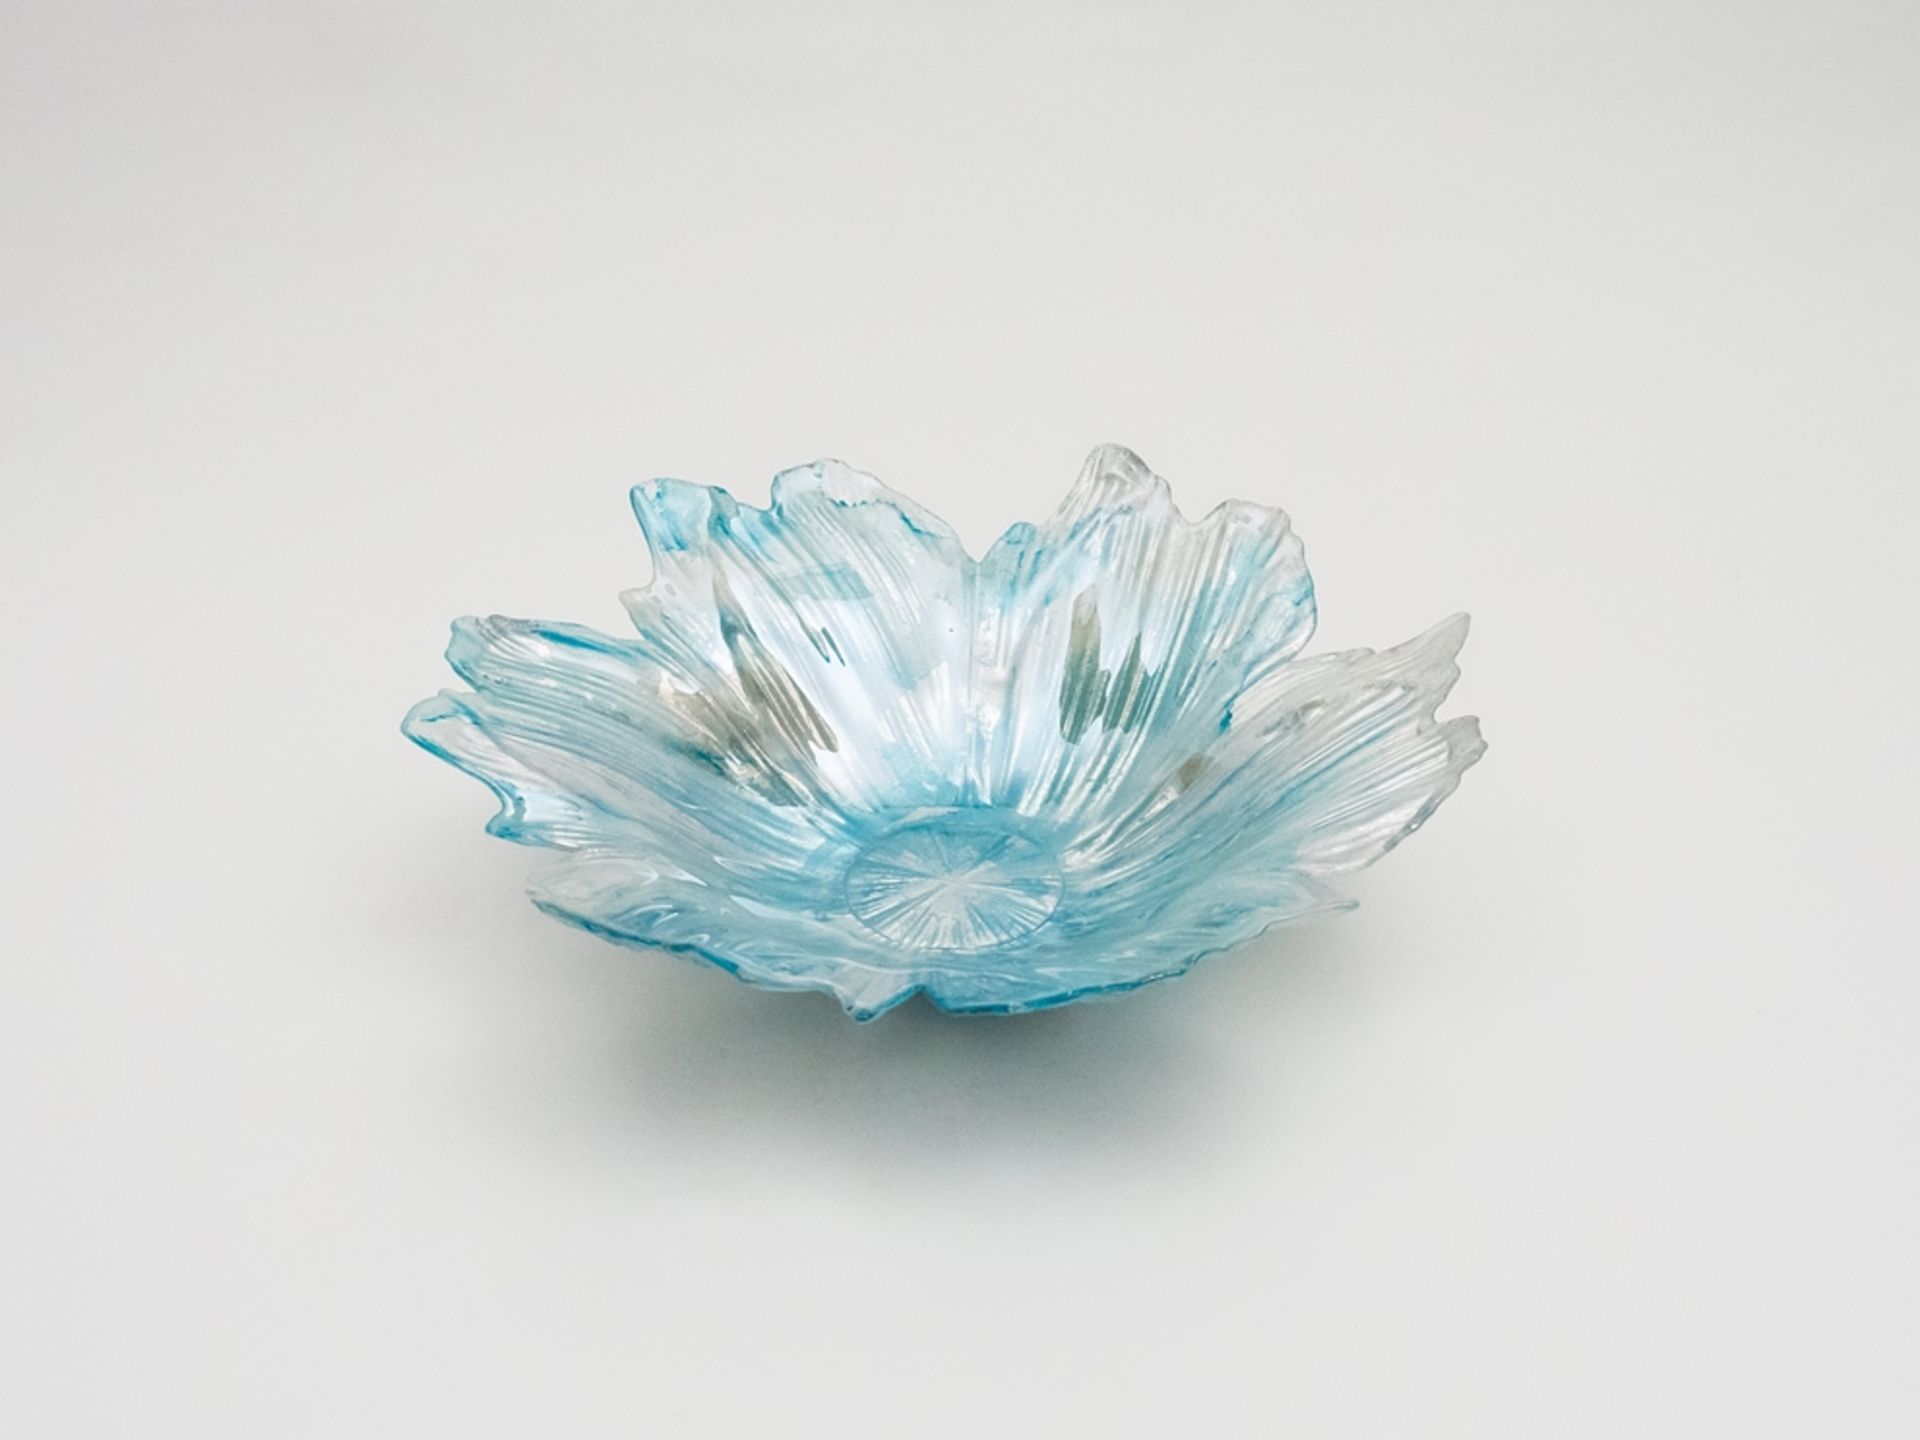 Blau-silber glitzernde Murano-Glasschale - Bild 3 aus 6